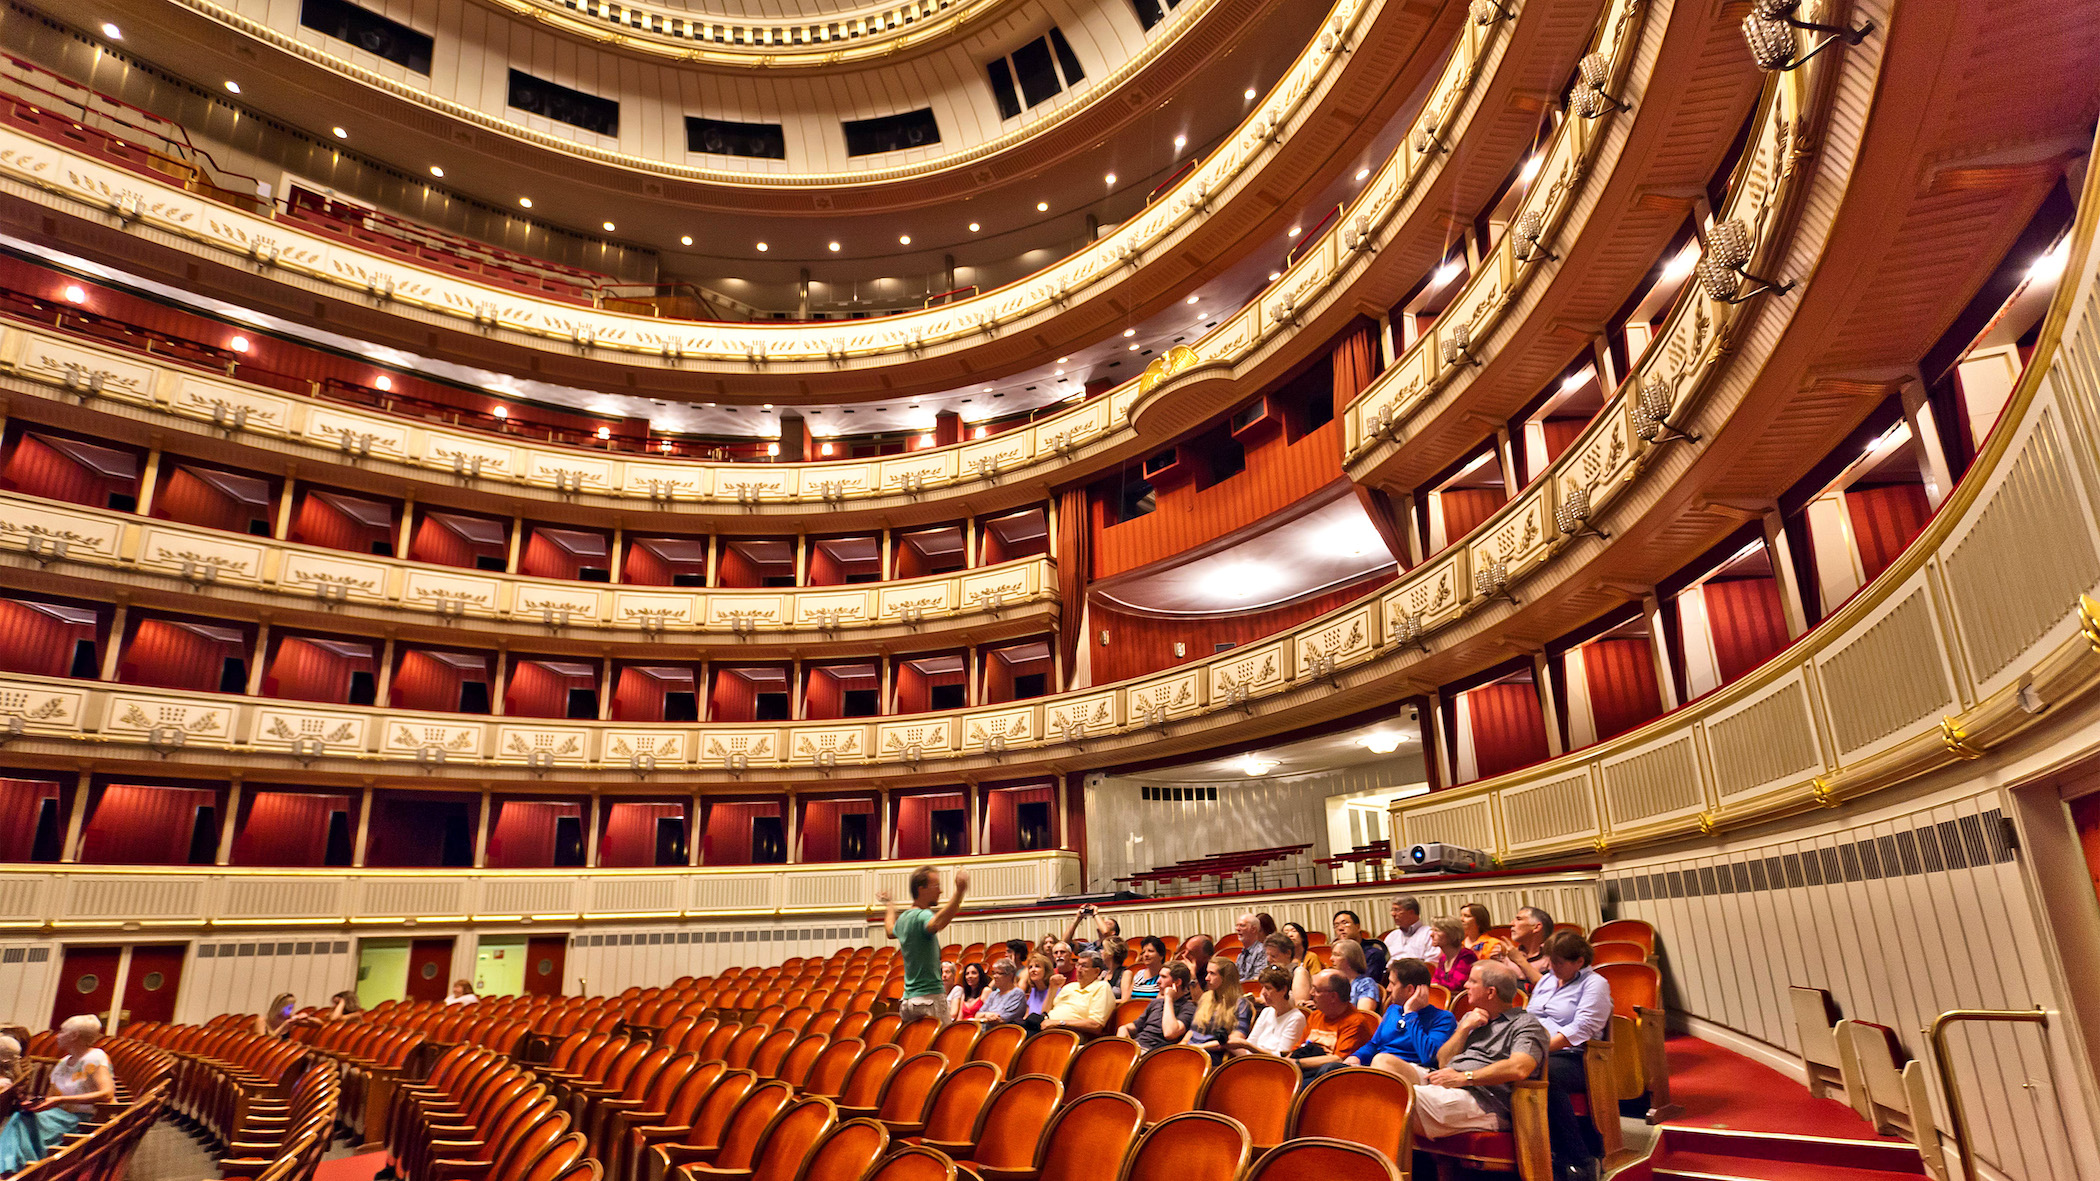 Nhà hát Vienna State Opera tổ chức các buổi biểu diễn vào ban tối và các chuyến tham quan vào ban ngày. (Ảnh: Dominic Arizona Bonuccelli/TNS)